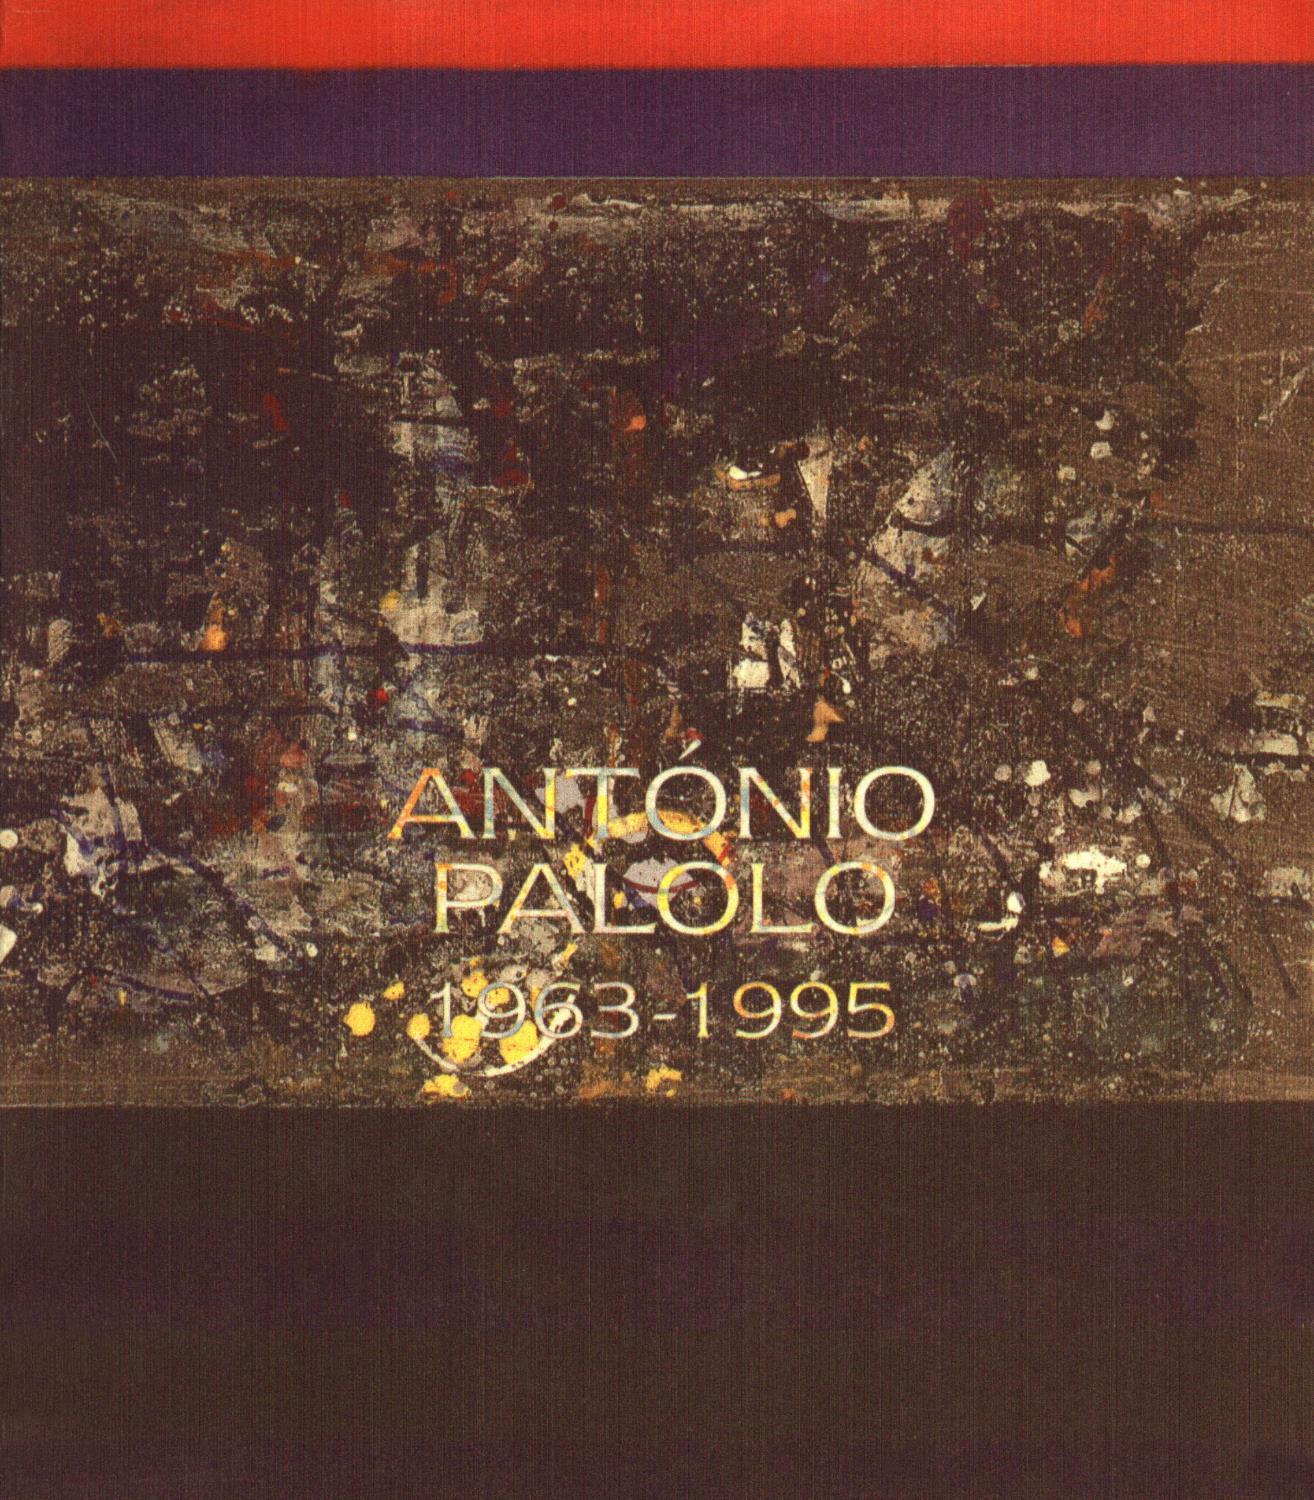 1995_Antonio_Palolo_1963-1995_catalogo_P8668